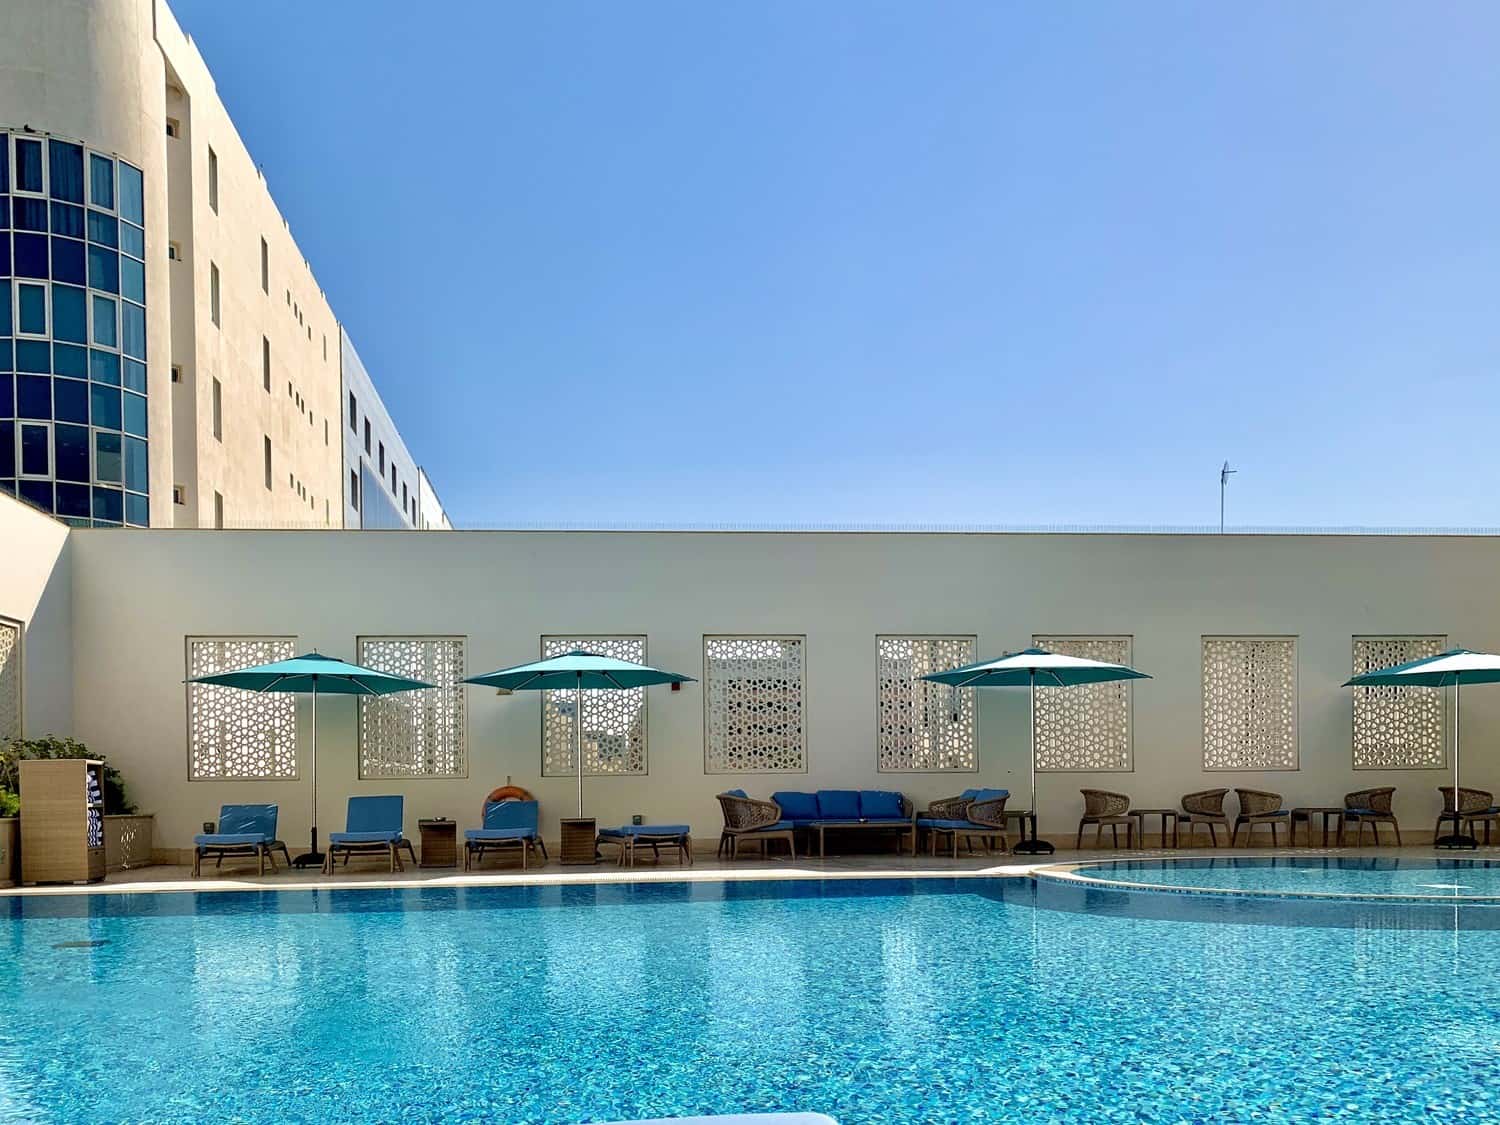 Pool at Al Najada hotel in Doha, Qatar